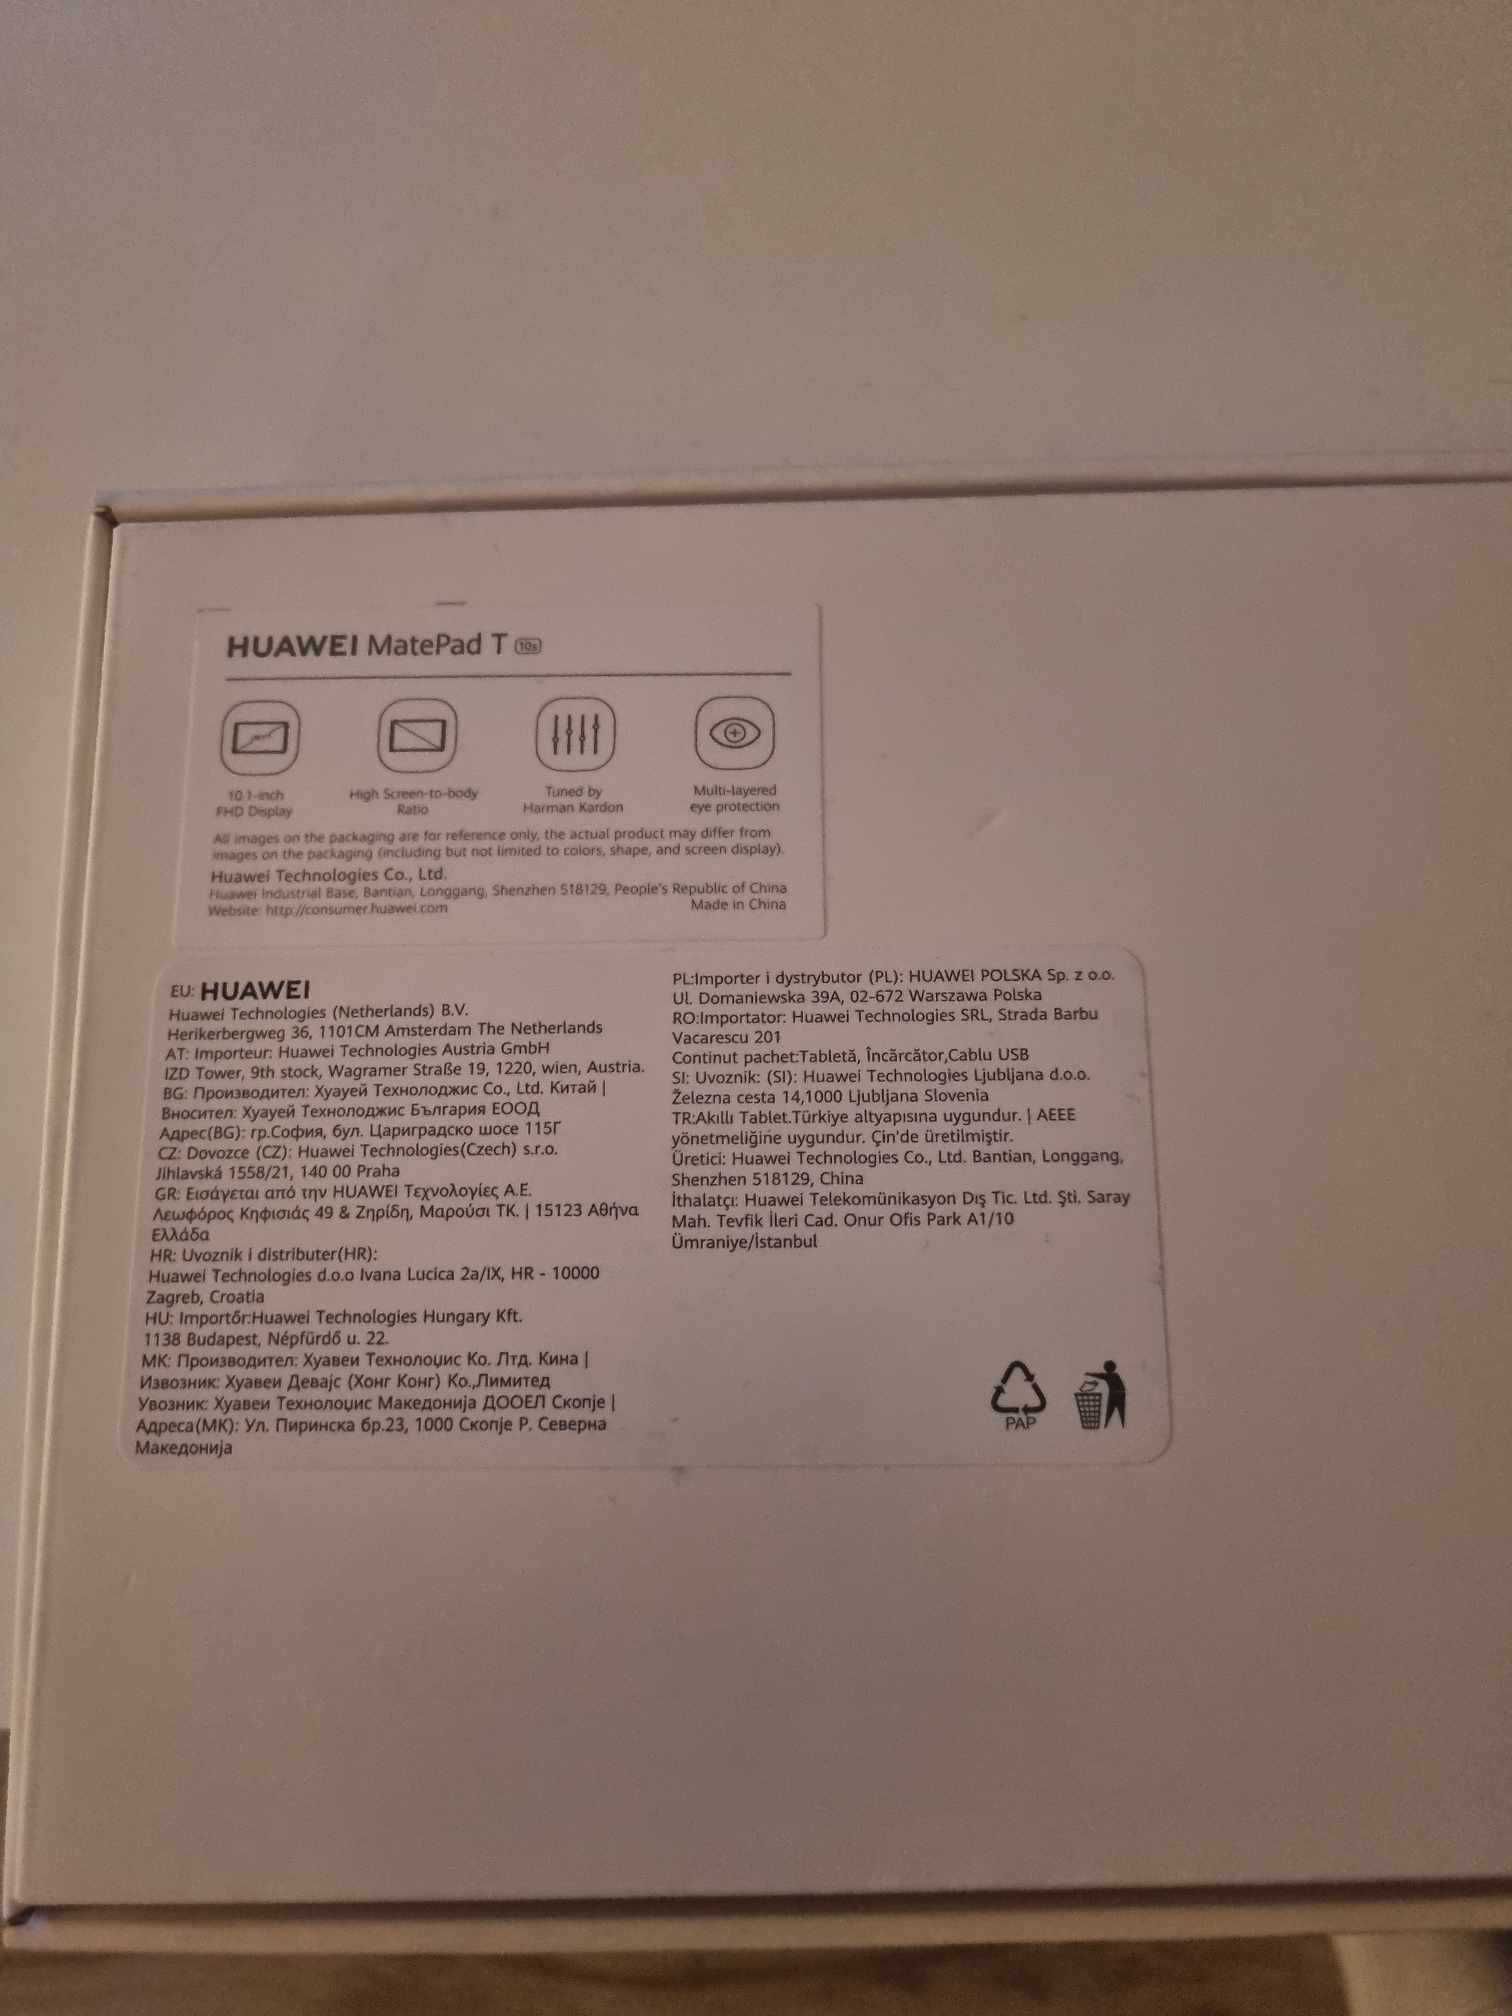 Huawei MatePad T10s WiFi 2GB/32GB